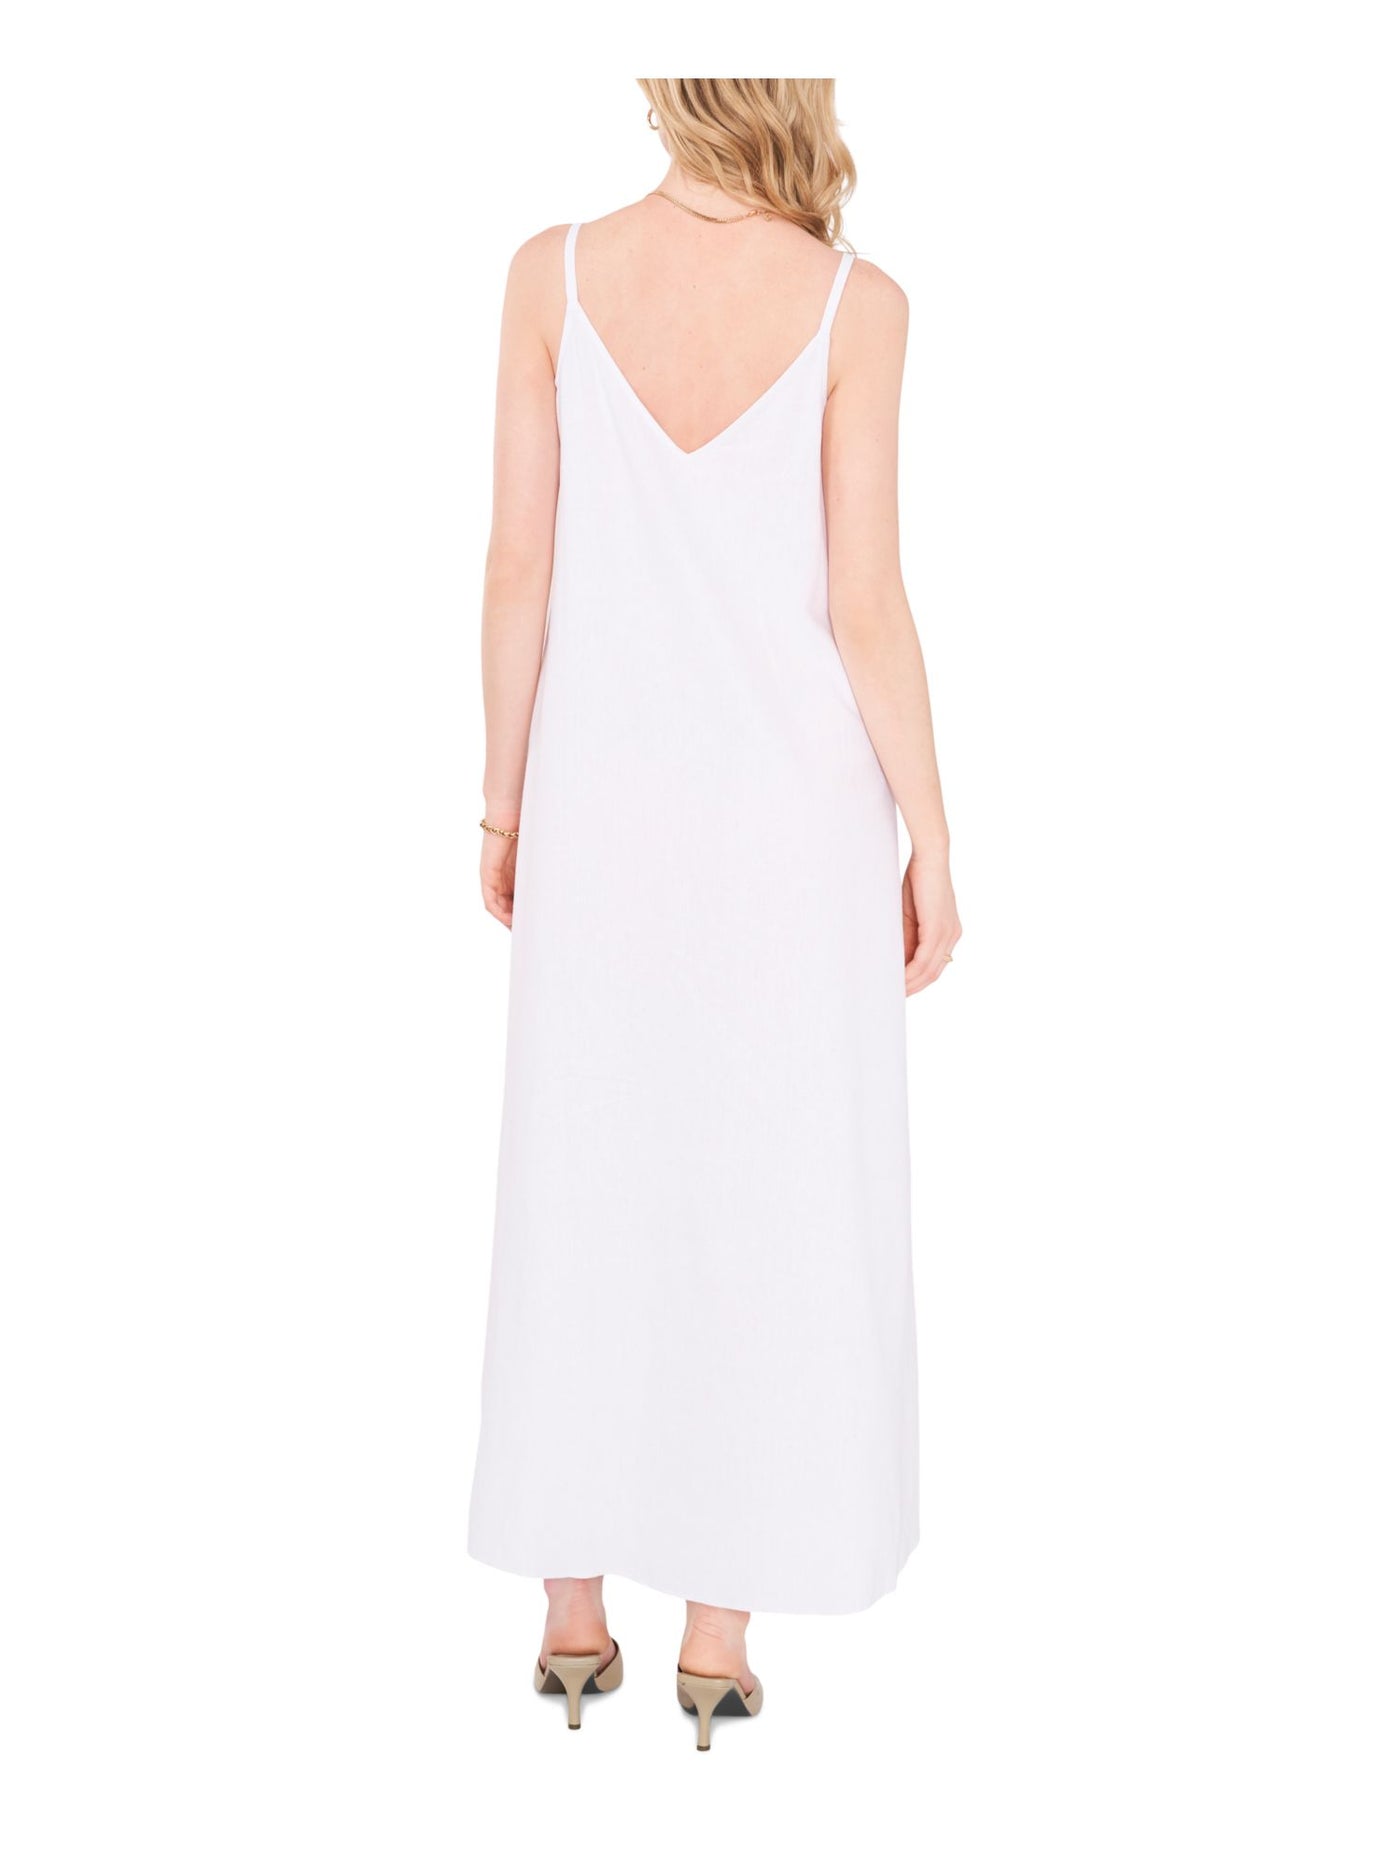 VINCE CAMUTO Womens White Sleeveless V Neck Maxi Shift Dress XS